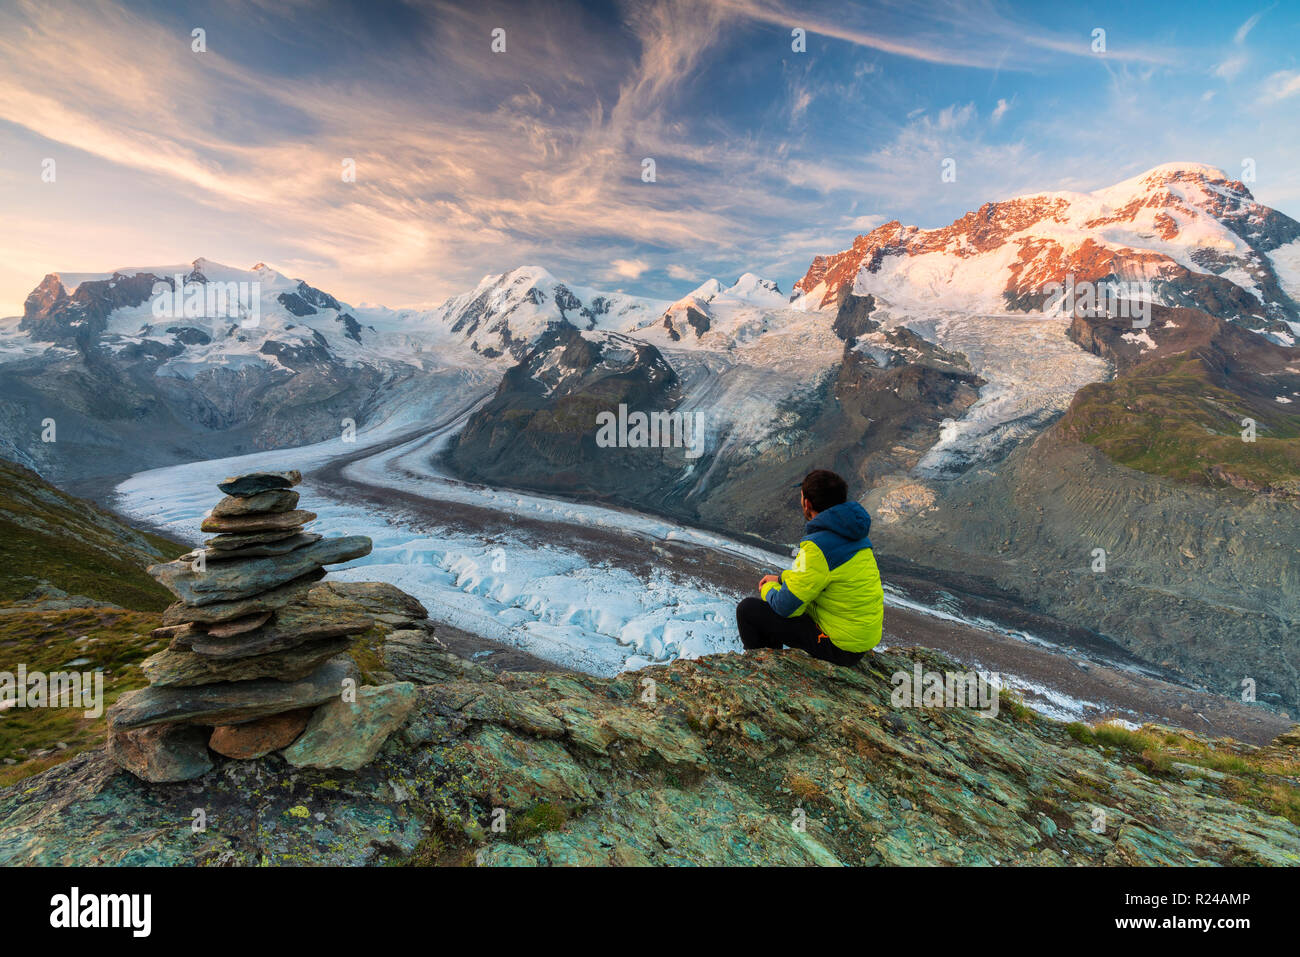 Escursionista seduti sulle rocce guardando verso il Monte Rosa ghiacciaio Zermatt, canton Vallese, alpi svizzere, Svizzera, Europa Foto Stock